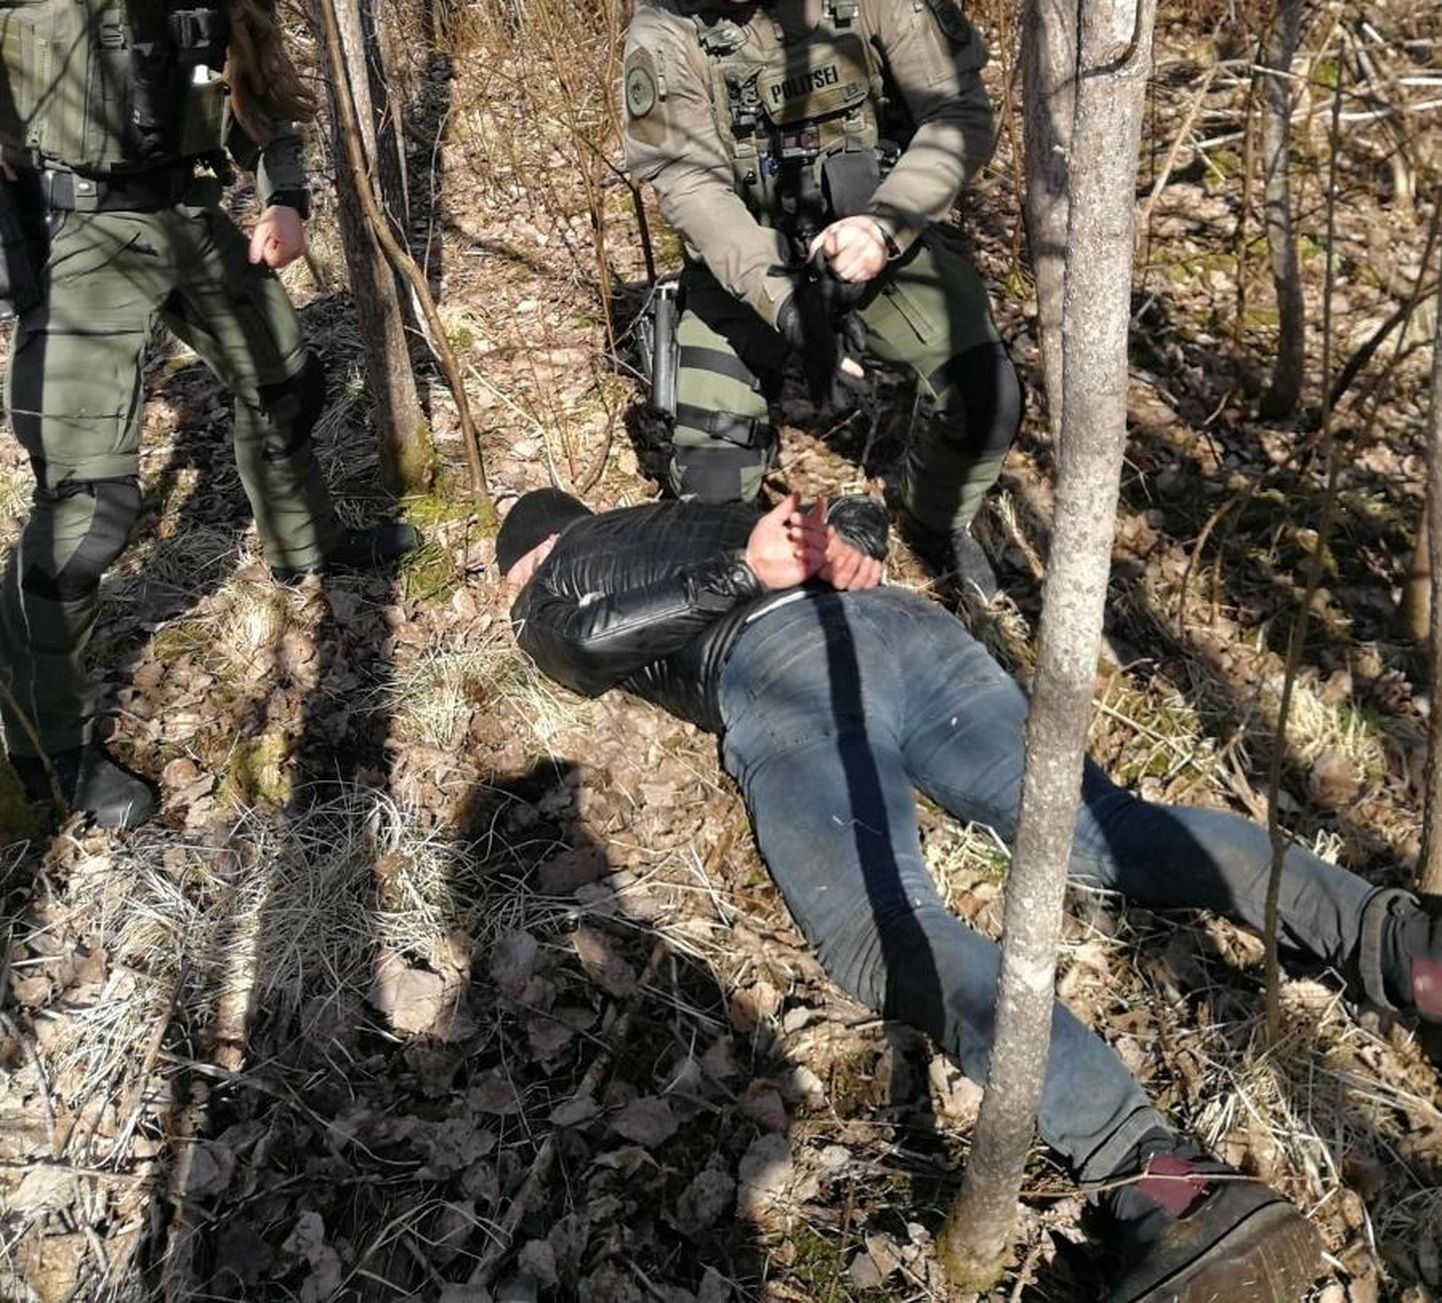 Politsei tabas mehed, keda kahtlustatakse sissemurdmistes mitmel pool Lõuna-Eestis.